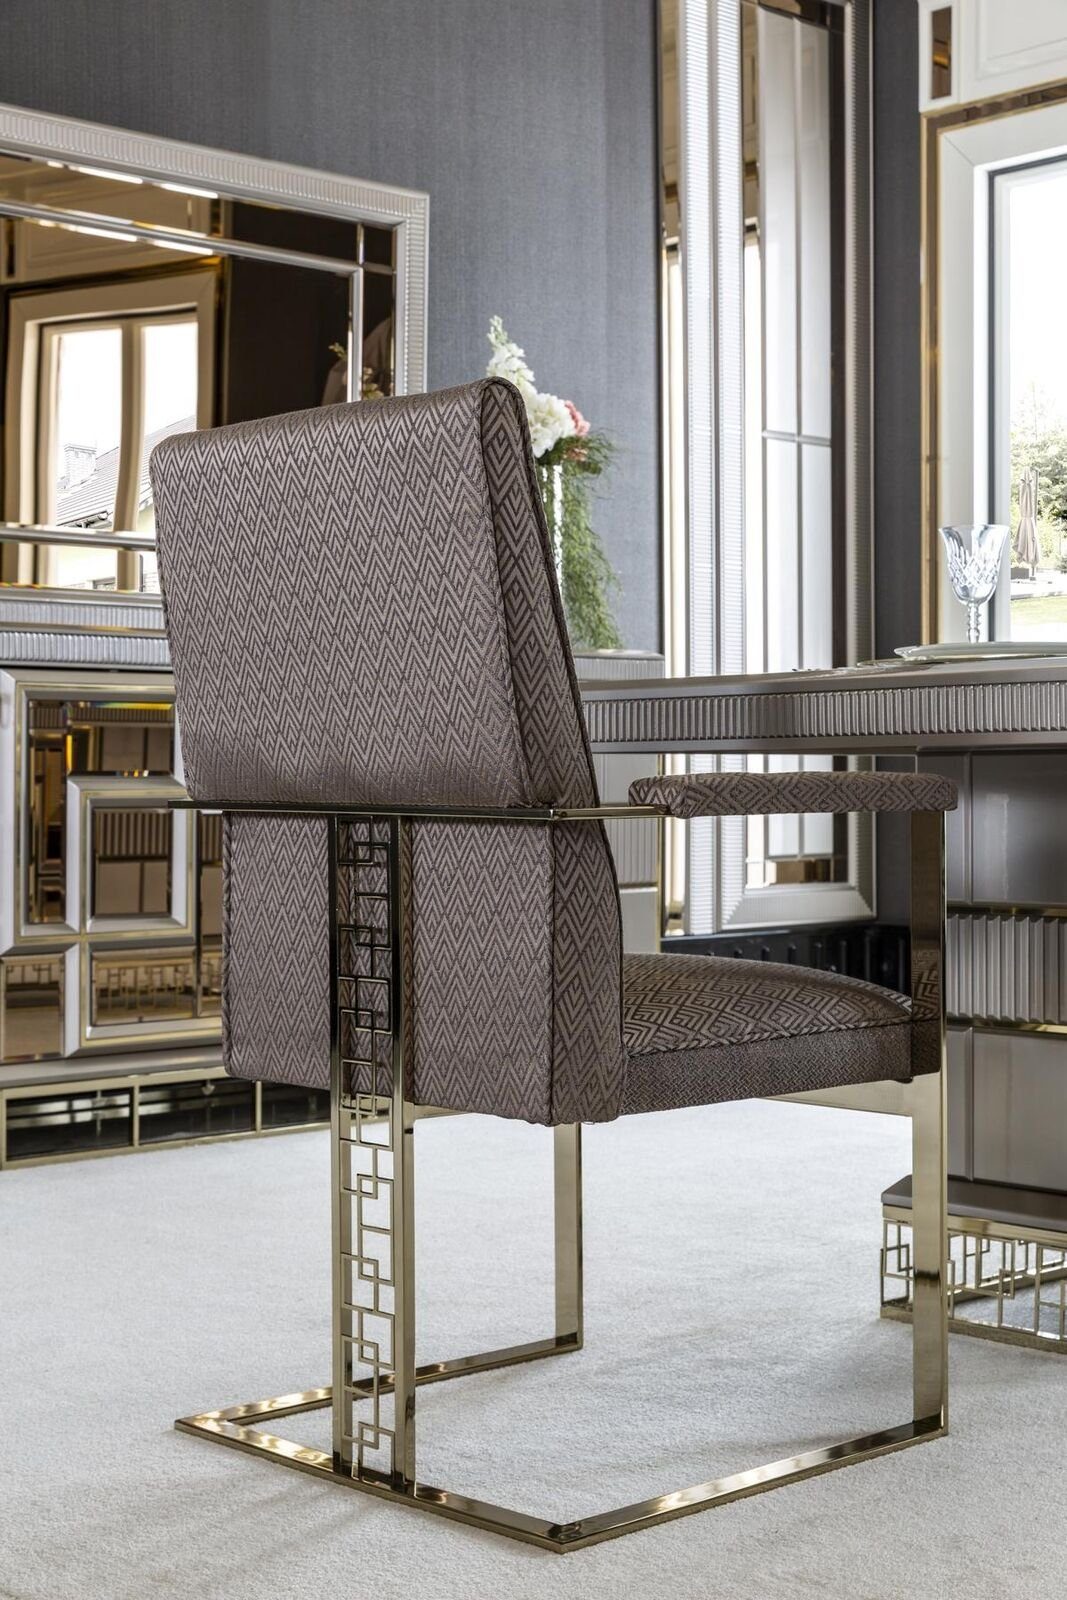 Jetzt supergünstig per Versand bestellen JVmoebel Esszimmerstuhl Stuhl Design Schön Möbel Stühle Esszimmer Grau Modern Luxus Elegantes